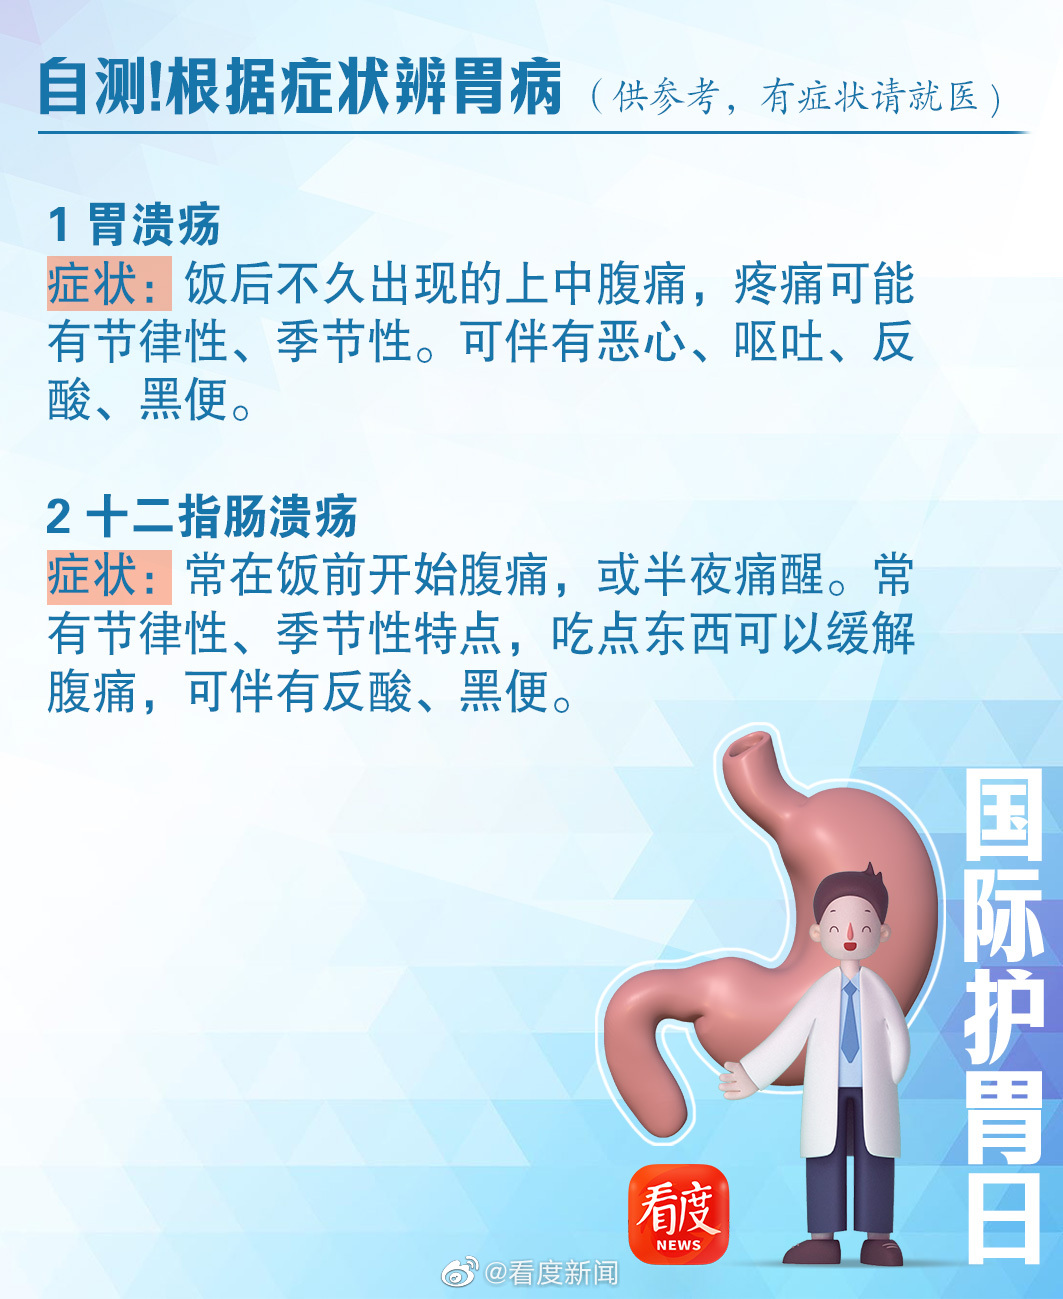 图102 胃的形态和分部-基础医学-医学